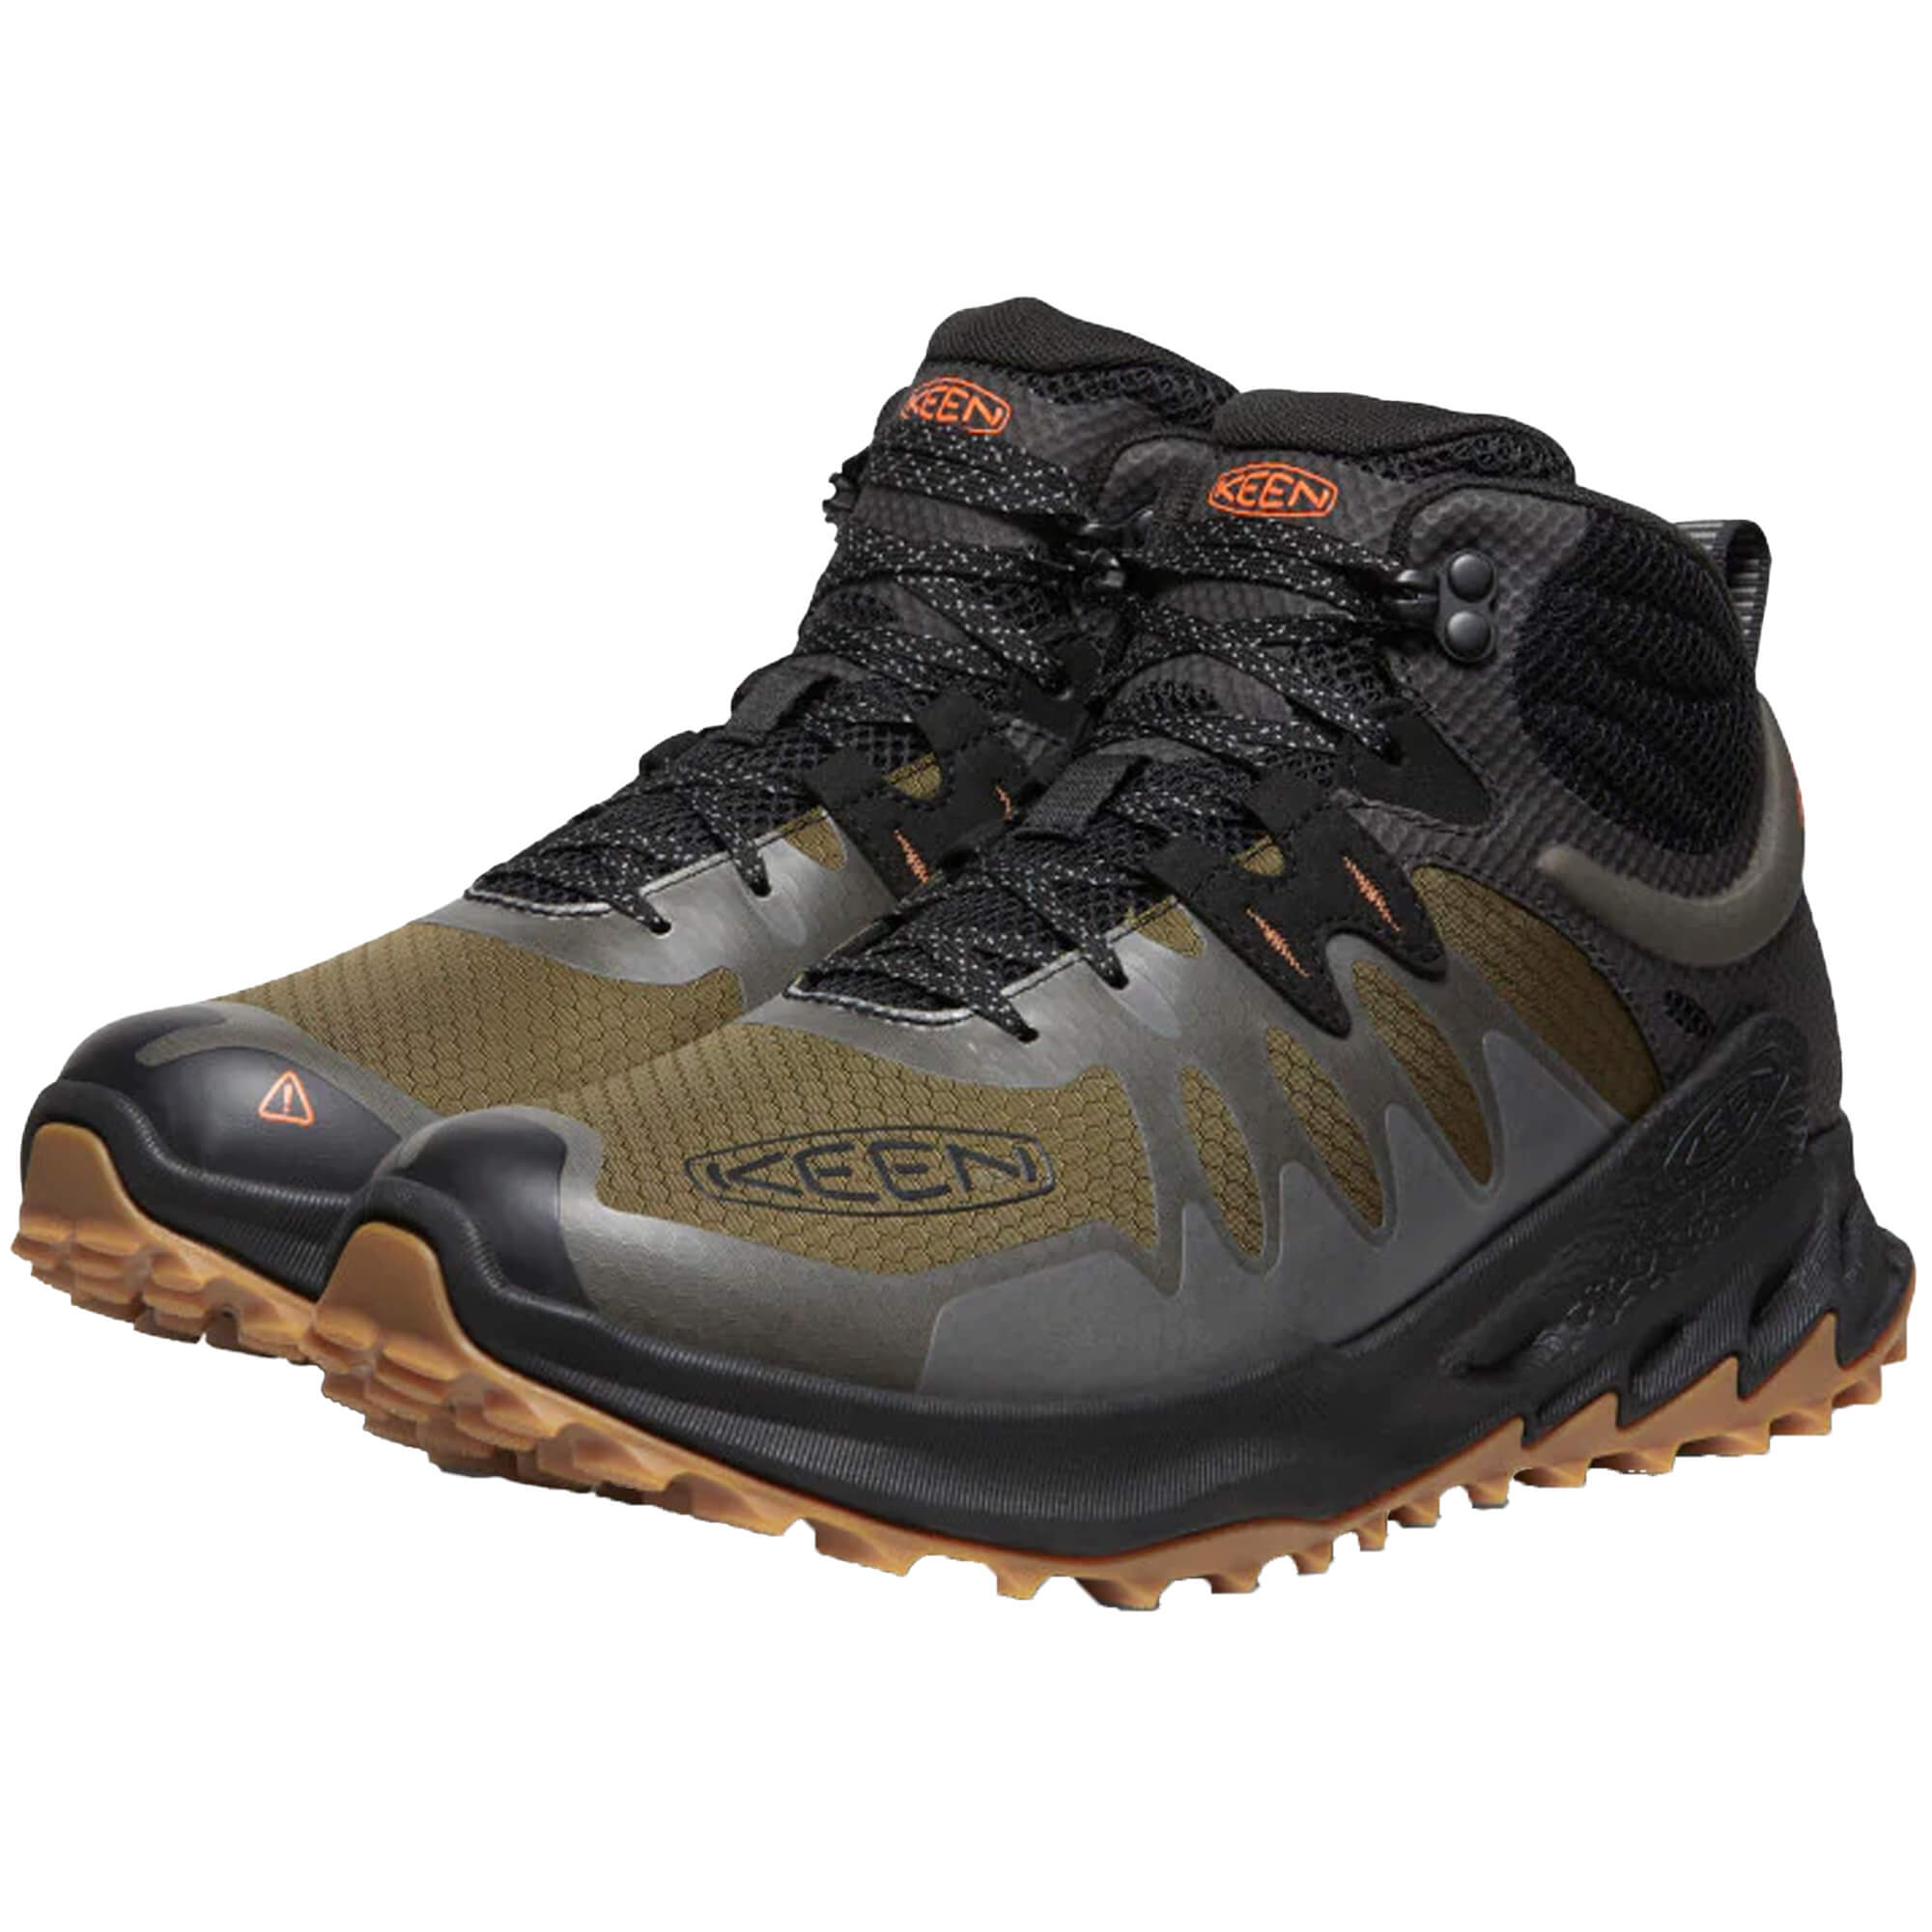 Keen Zionic Mid Waterproof Men's Hiking Boots